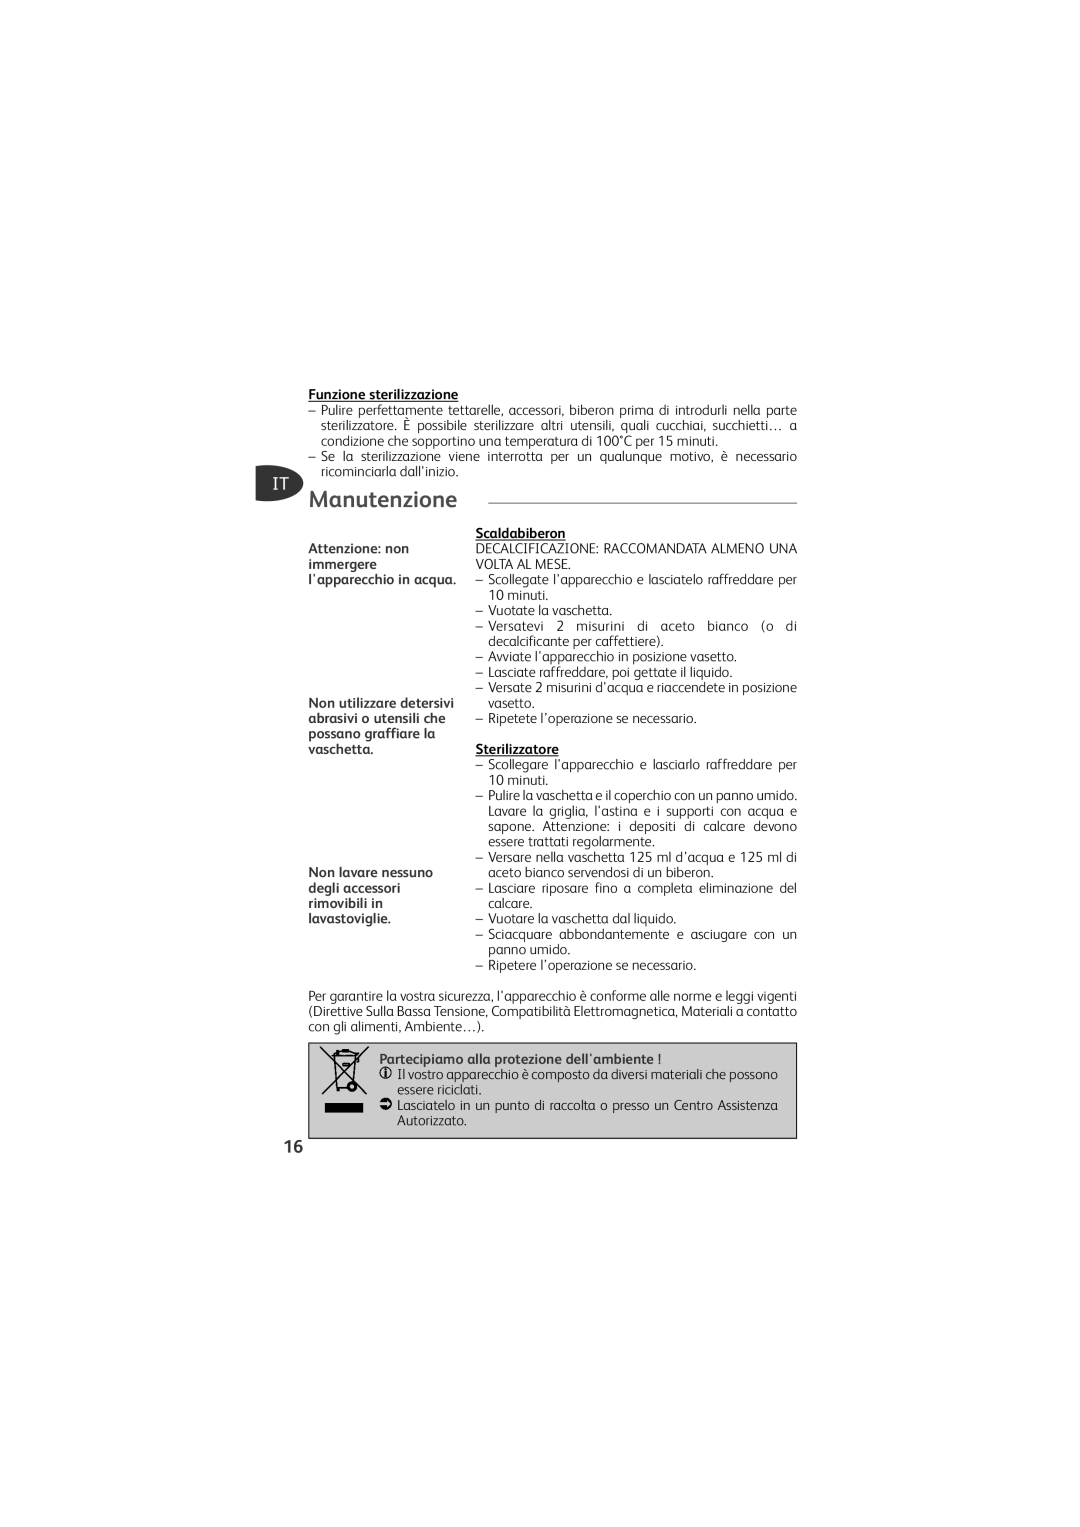 Tefal TD4200K0 manual Manutenzione, Funzione sterilizzazione, Scaldabiberon, Sterilizzatore 